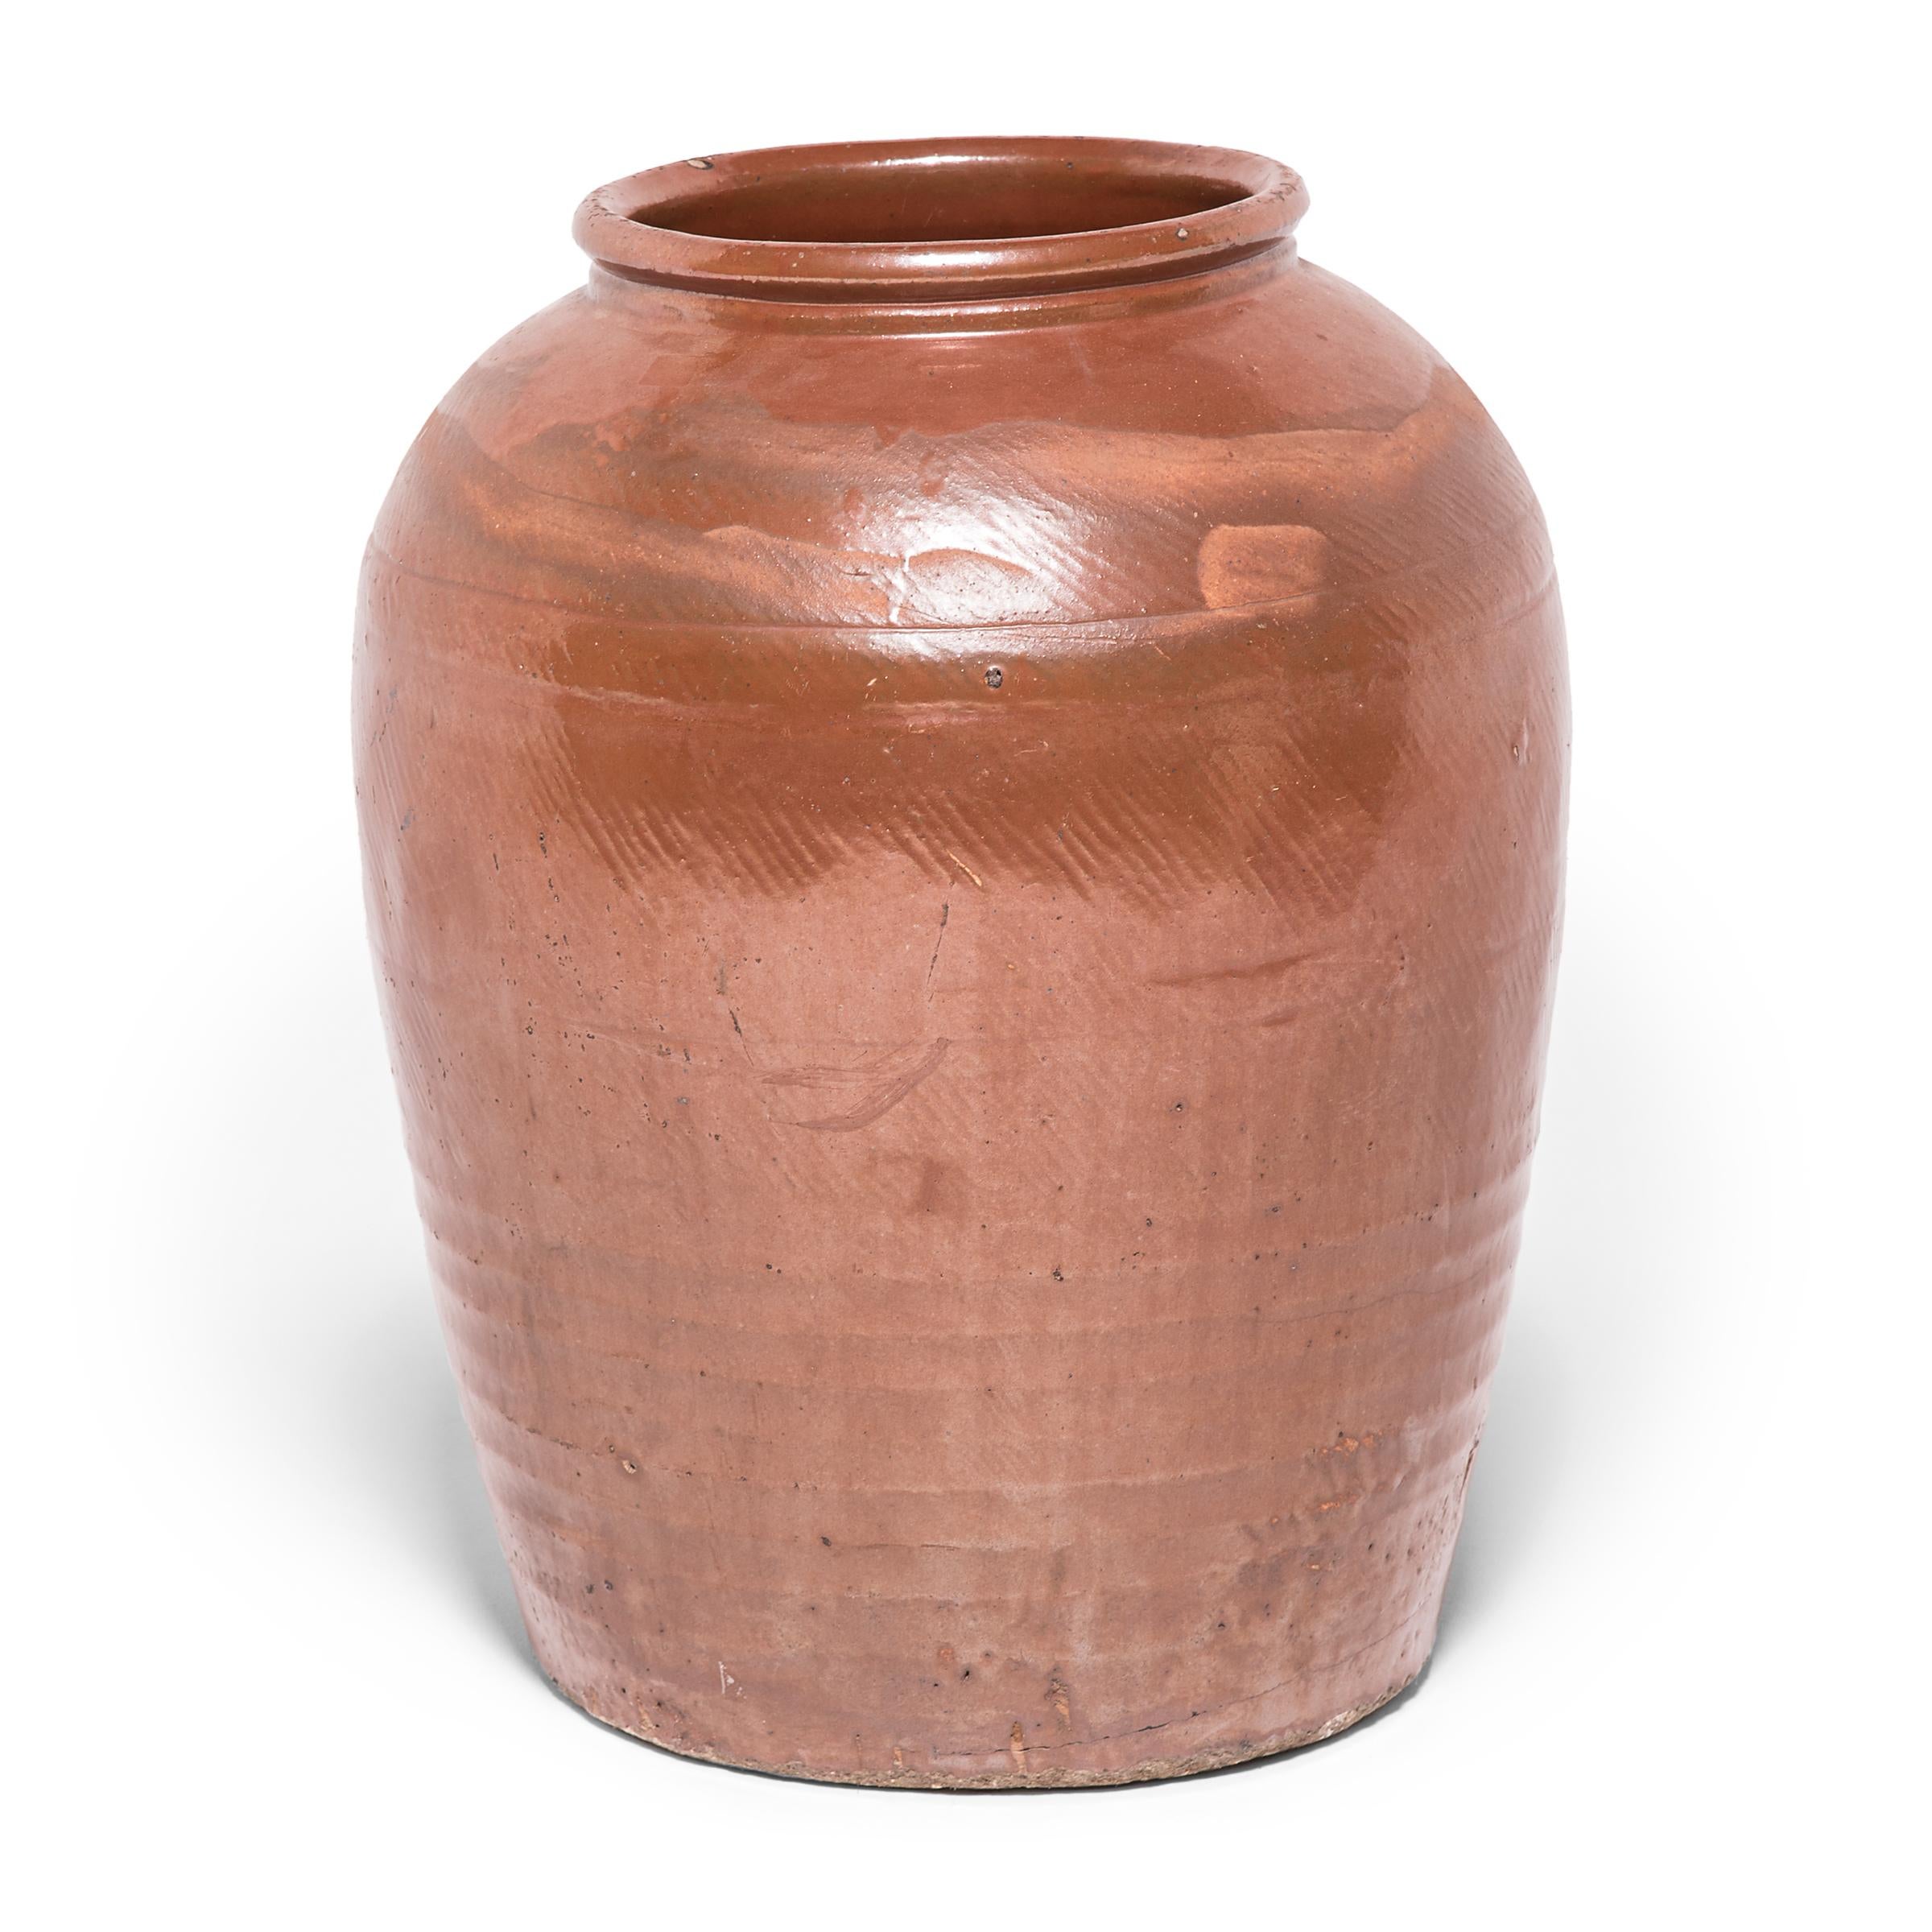 Diese schöne Urne, die zugleich antik und modern ist, zeugt von der Zeitlosigkeit des chinesischen Keramikdesigns. Die Anfang des 20. Jahrhunderts in Nordchina hergestellte Urne zollt den Materialien und dem Handwerk Respekt, trägt die subtilen